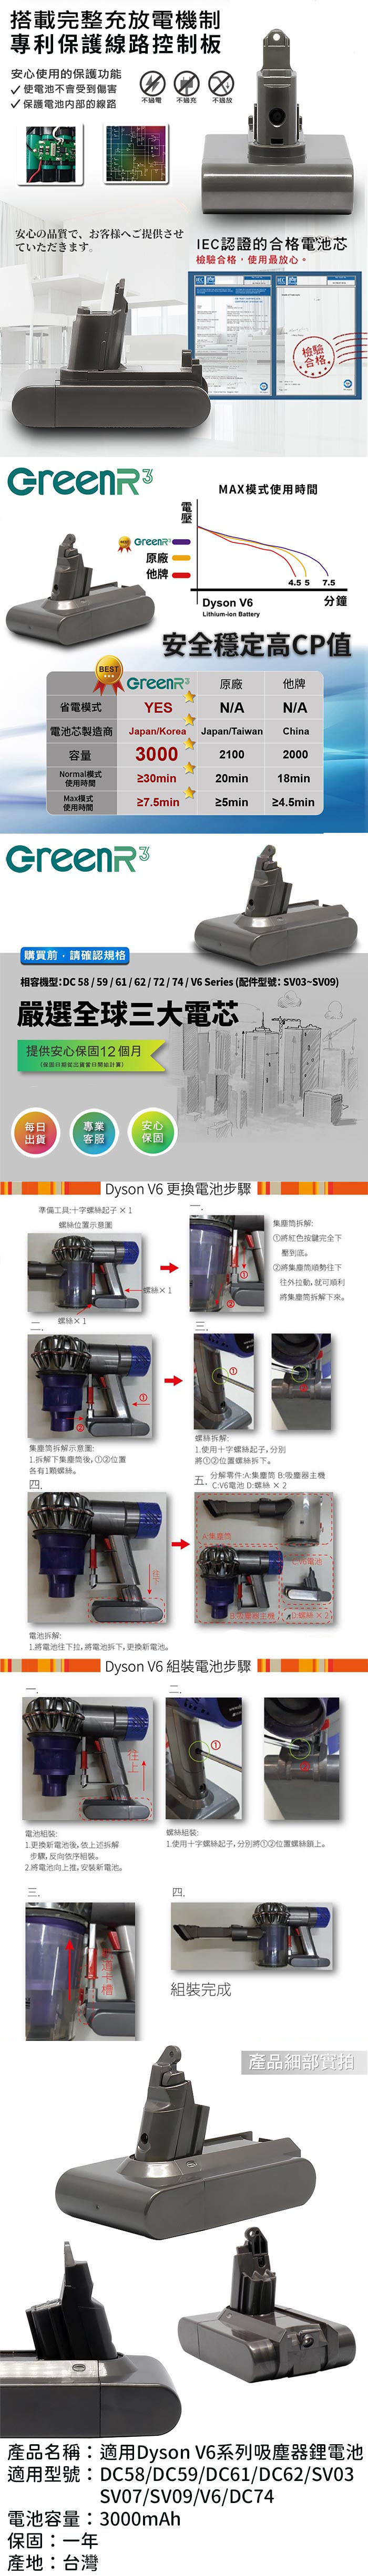 《台灣製》GreenR3 3000mAh Dyson V6 系列吸塵器適用 鋰電池 (台南可來店更換免工資)